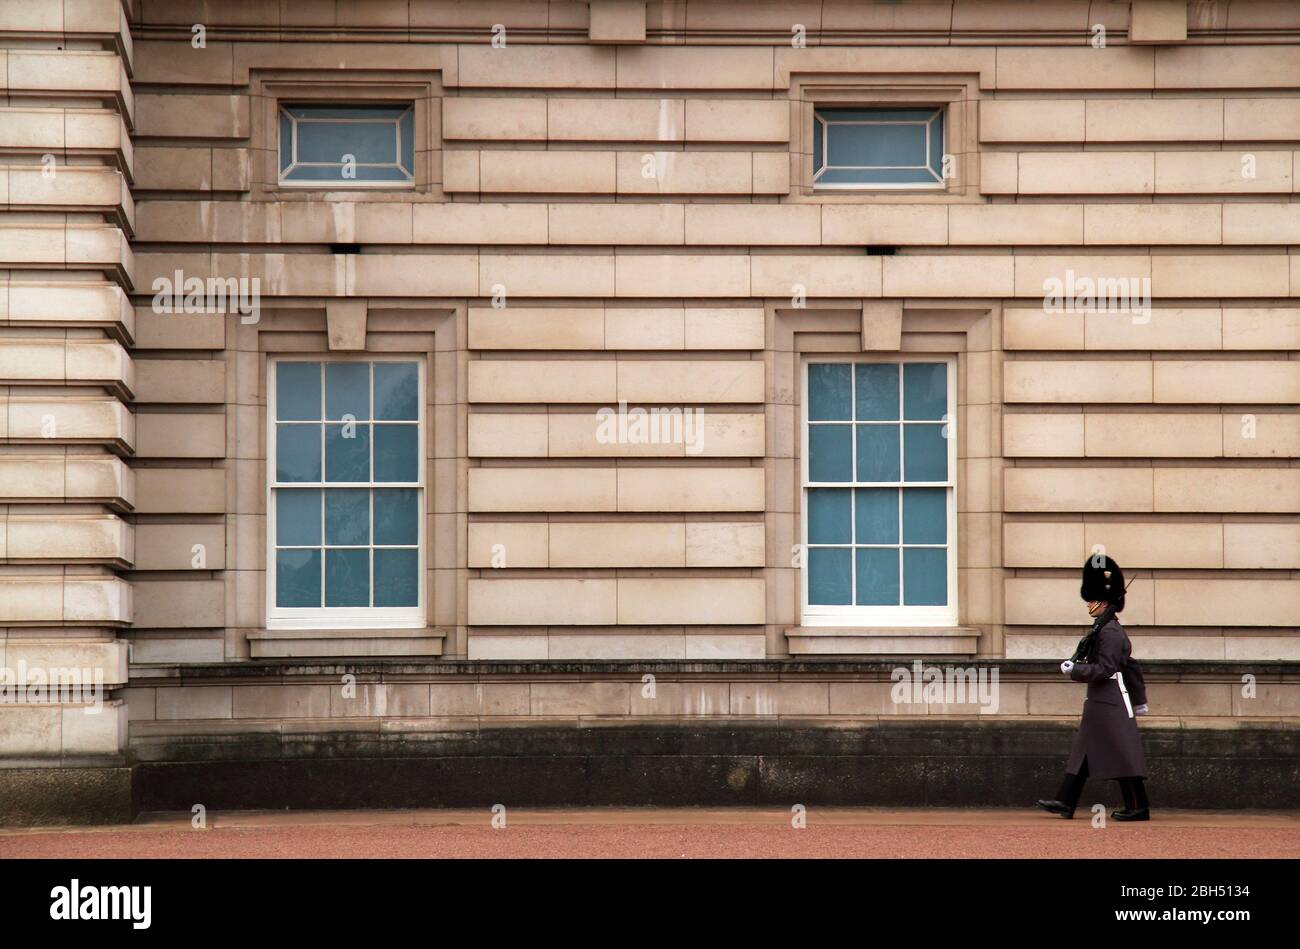 Un membre de la garde de la Reine, vêtu avec soin, exerce ses fonctions devant le palais de Buckingham à Londres, en Angleterre, le 13 mars 2020 à Londres, au Royaume-Uni Banque D'Images